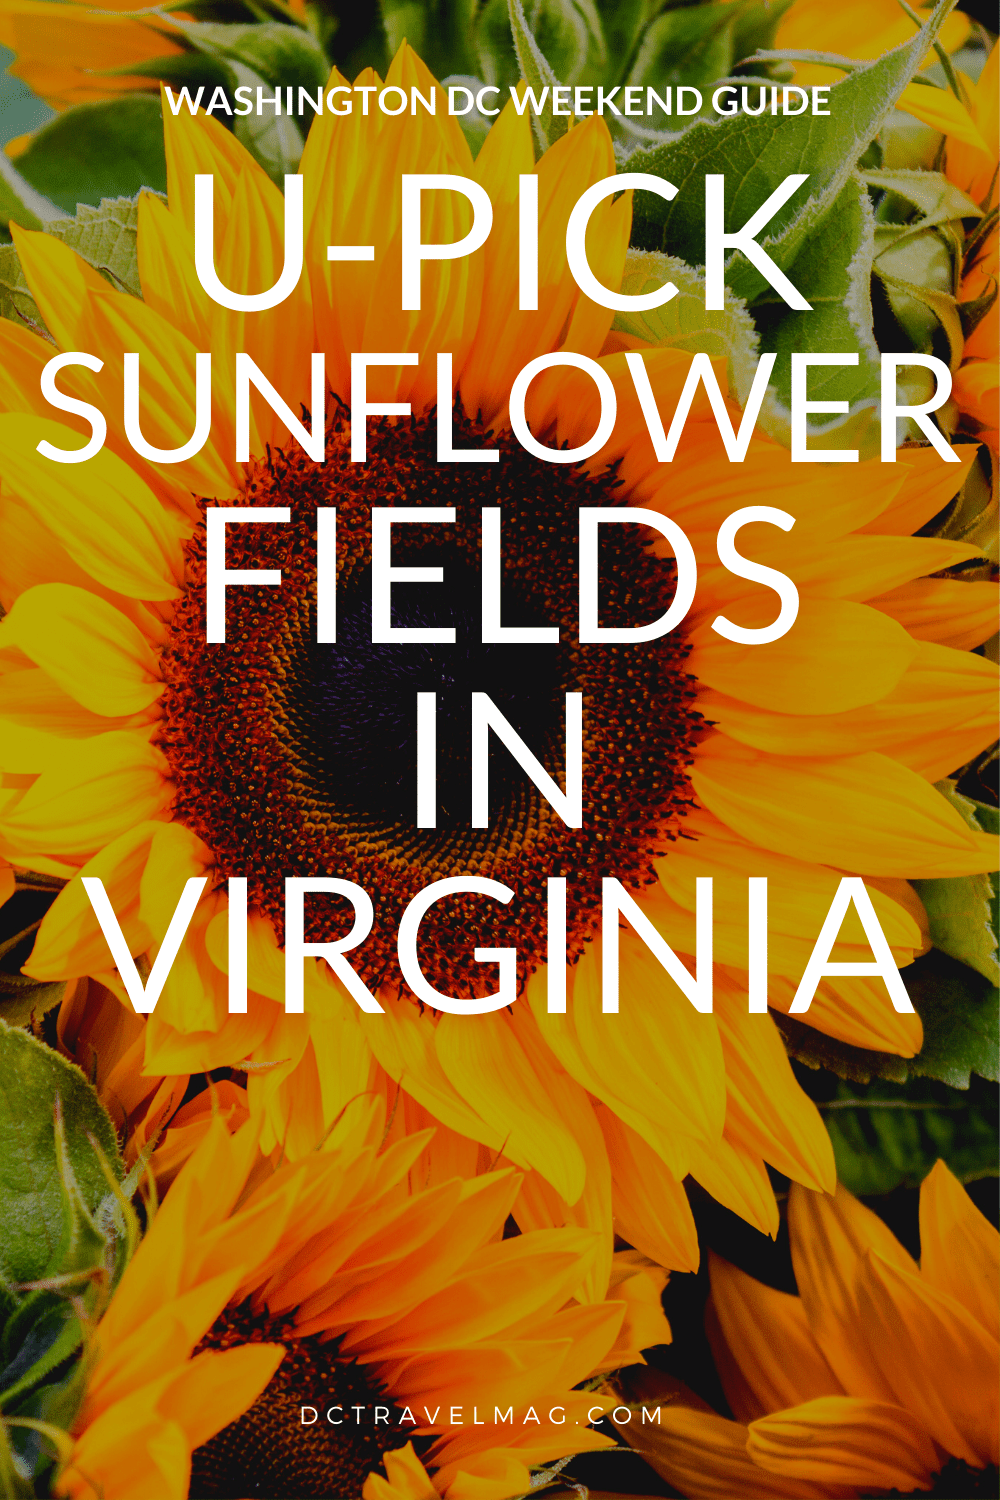 Sunflower Fields In Virginia For U-Pick Flowers